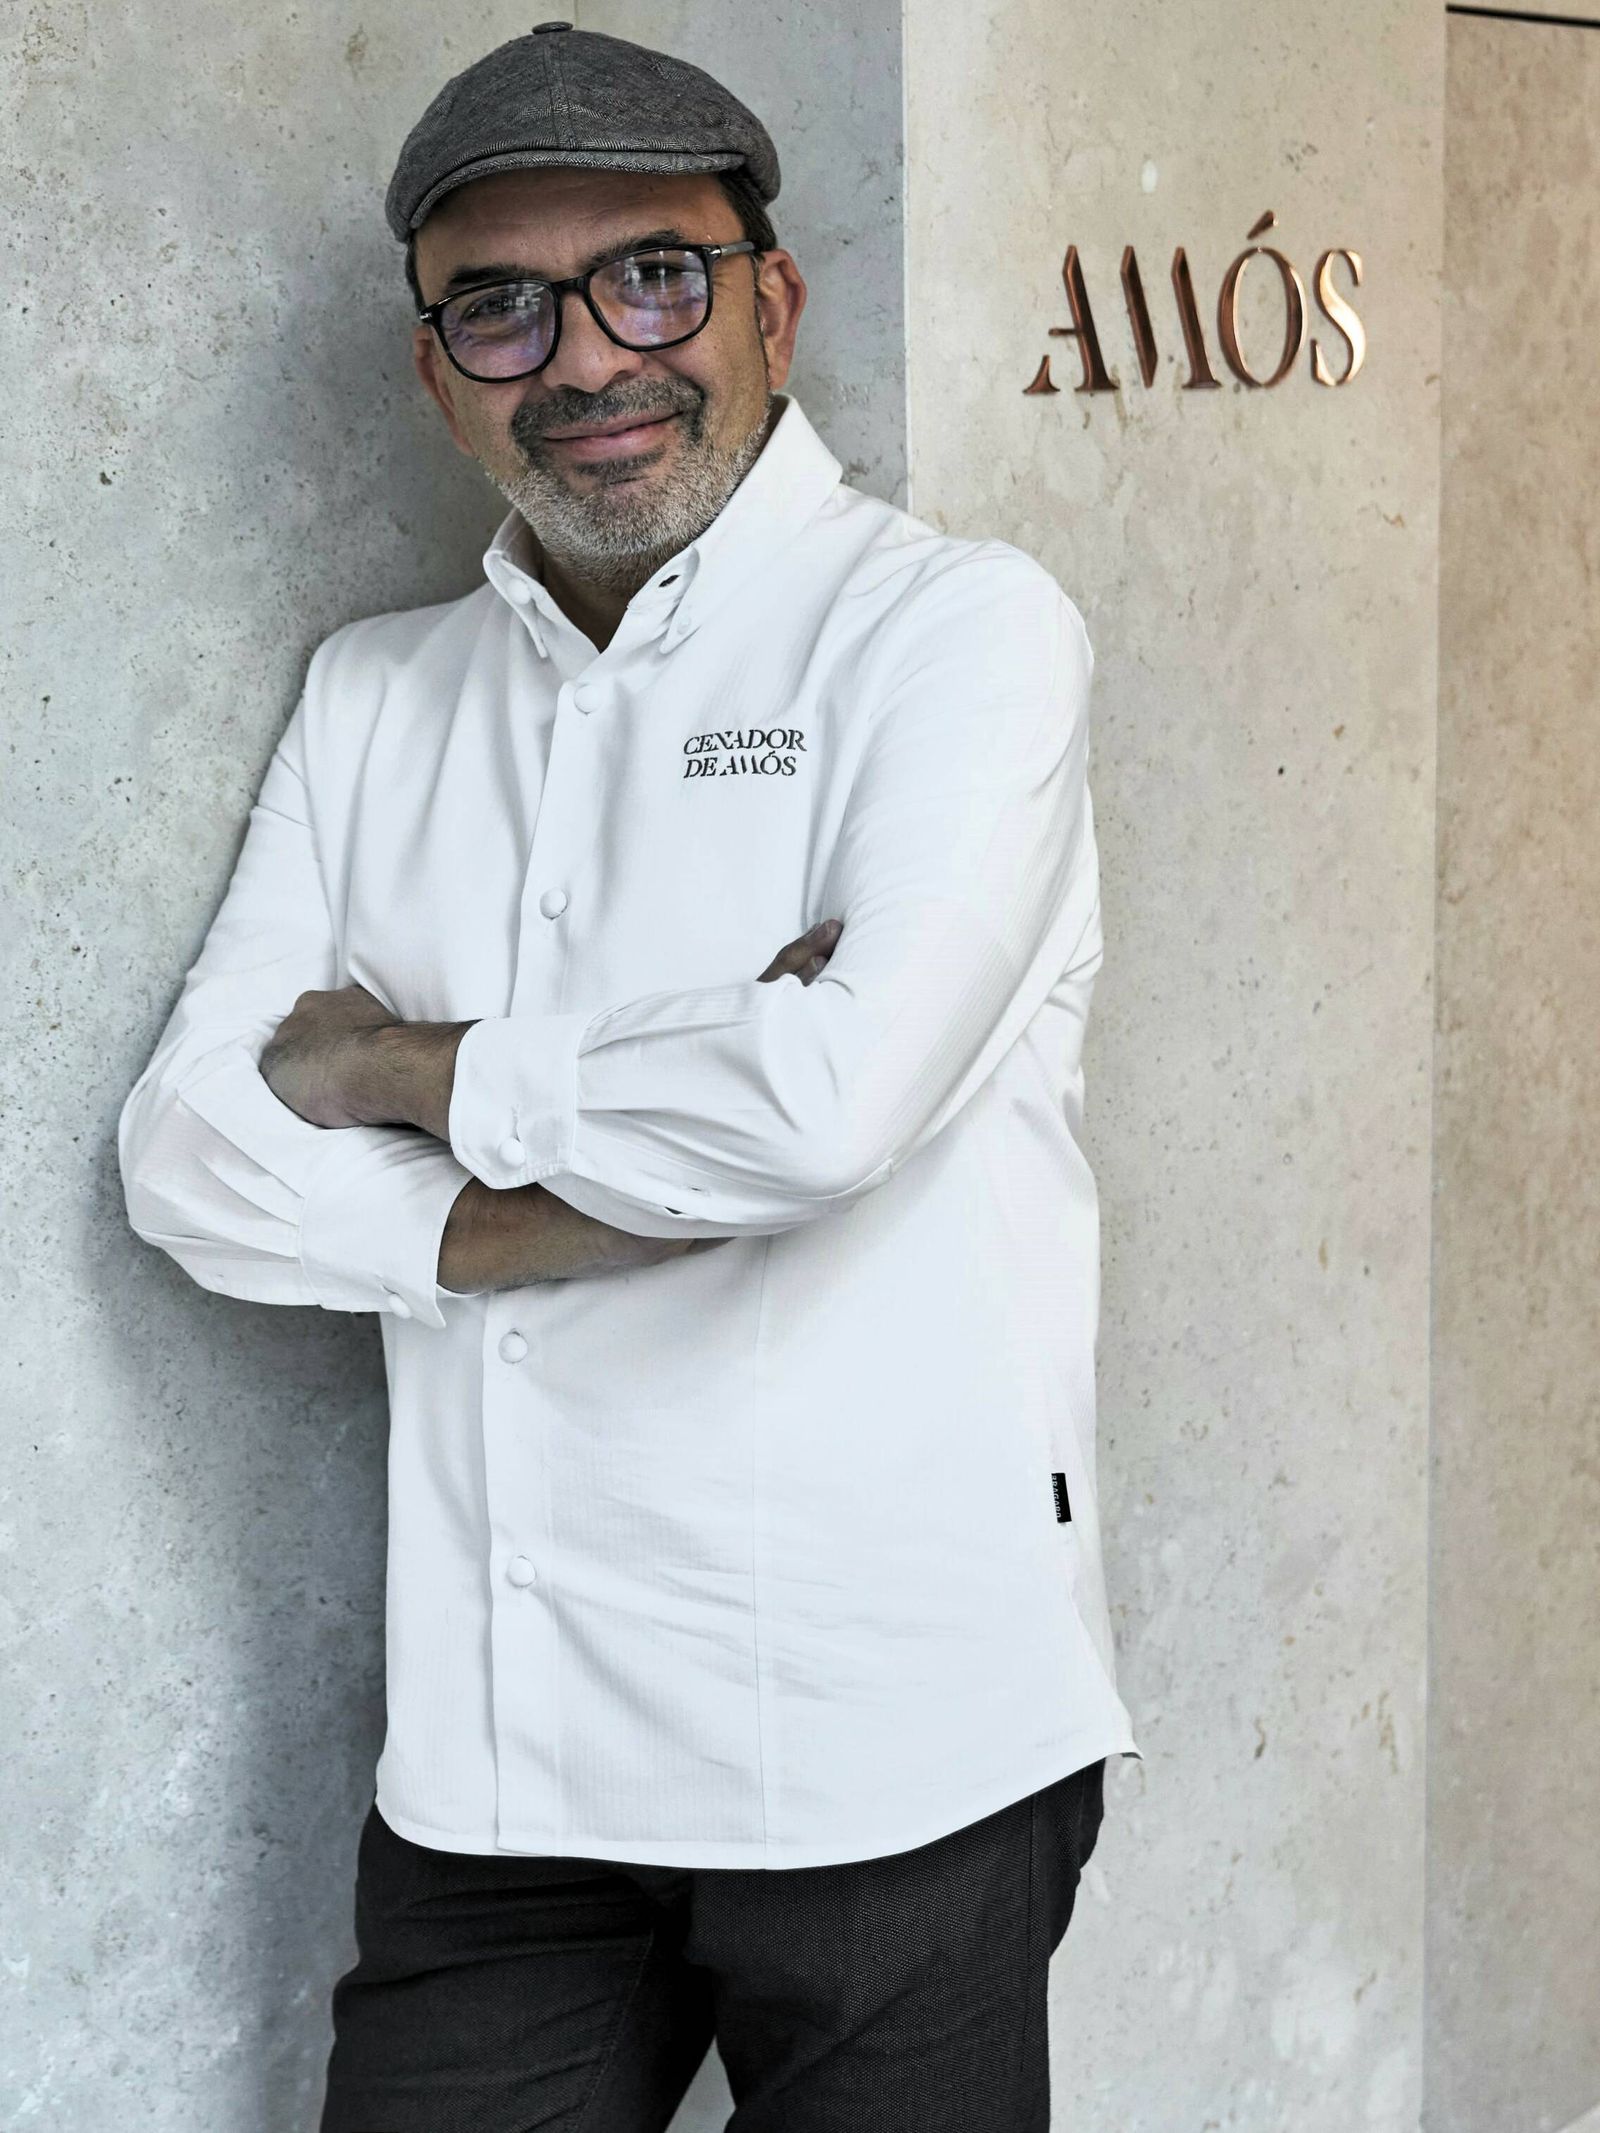 Jesús Sánchez, Premio Nacional de Gastronomía 2022 y feliz padre de tres estrellas y tres soles por el Cenador de Amós, Cantabria. (Cortesía)